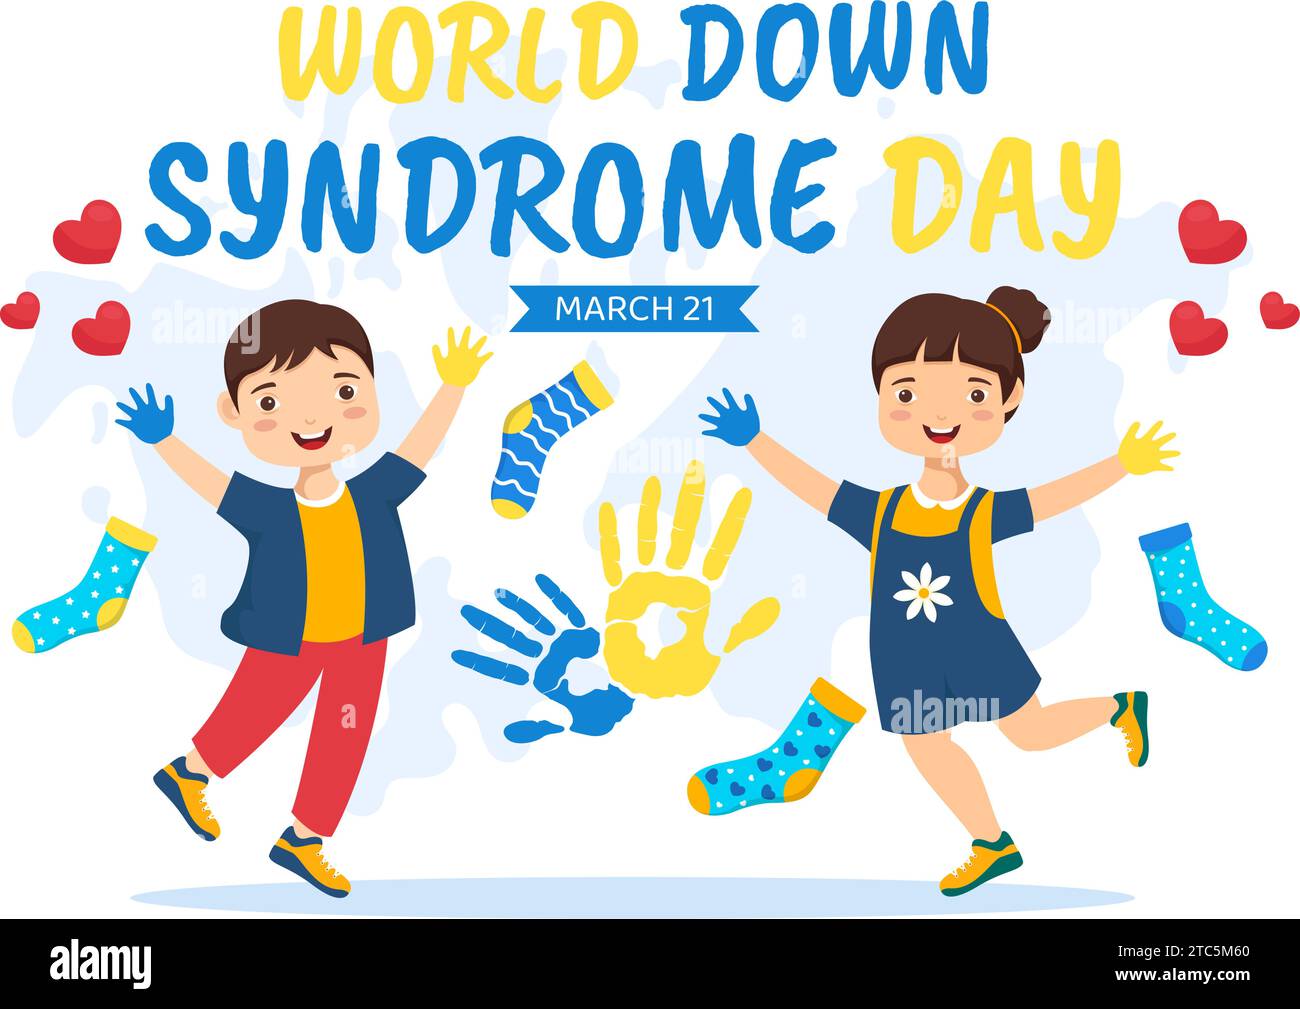 Illustration vectorielle de la Journée mondiale du syndrome de Down le 21 mars avec ruban bleu et jaune, carte de la Terre, chaussettes non appariées et enfants en fond de dessin animé plat Illustration de Vecteur